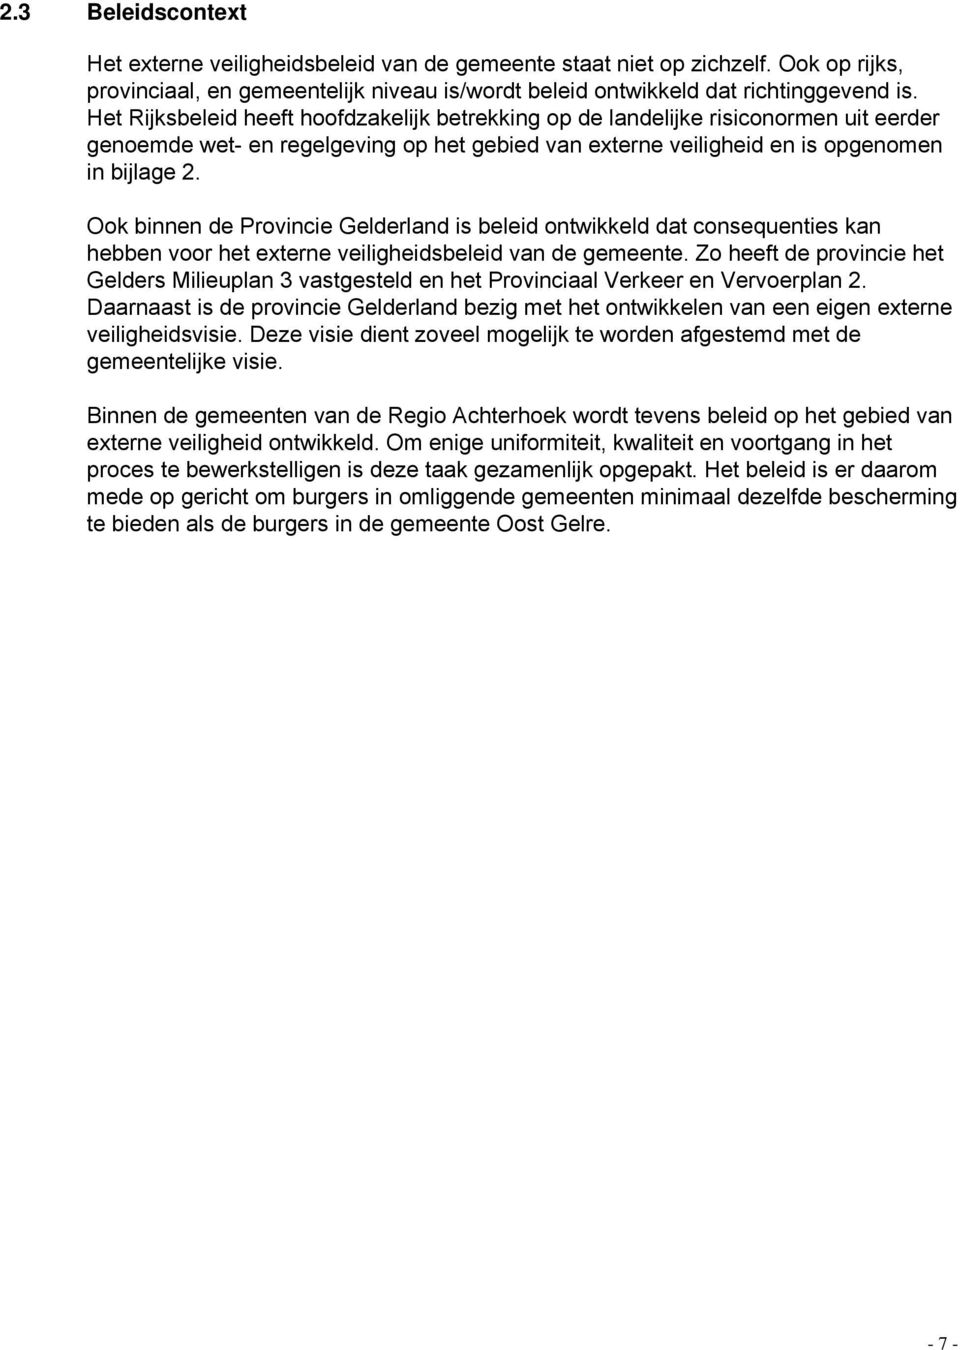 Ook binnen de Provincie Gelderland is beleid ontwikkeld dat consequenties kan hebben voor het externe veiligheidsbeleid van de gemeente.